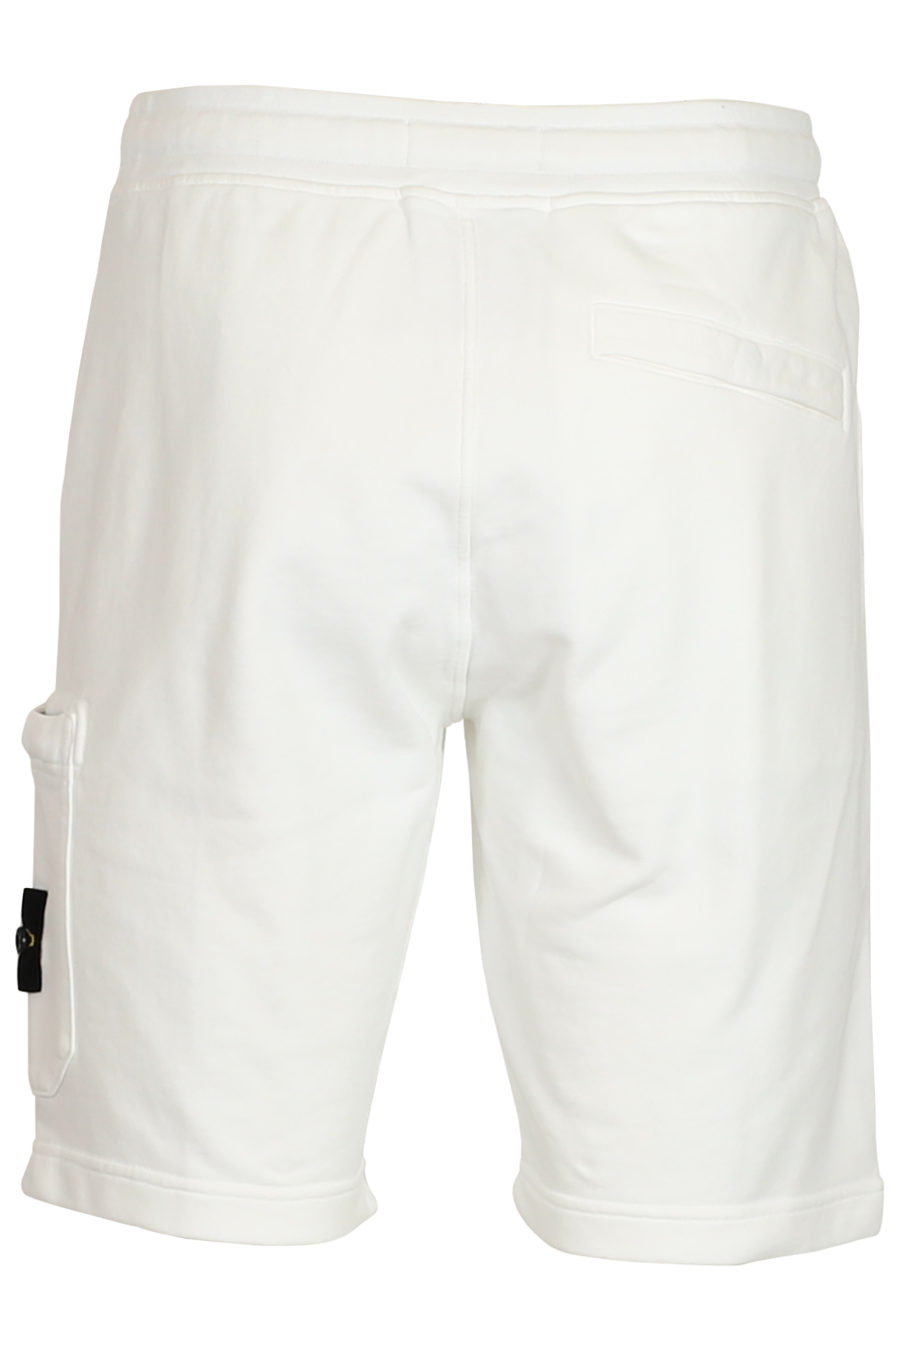 Pantalón corto de chándal blanco - IMG 3772